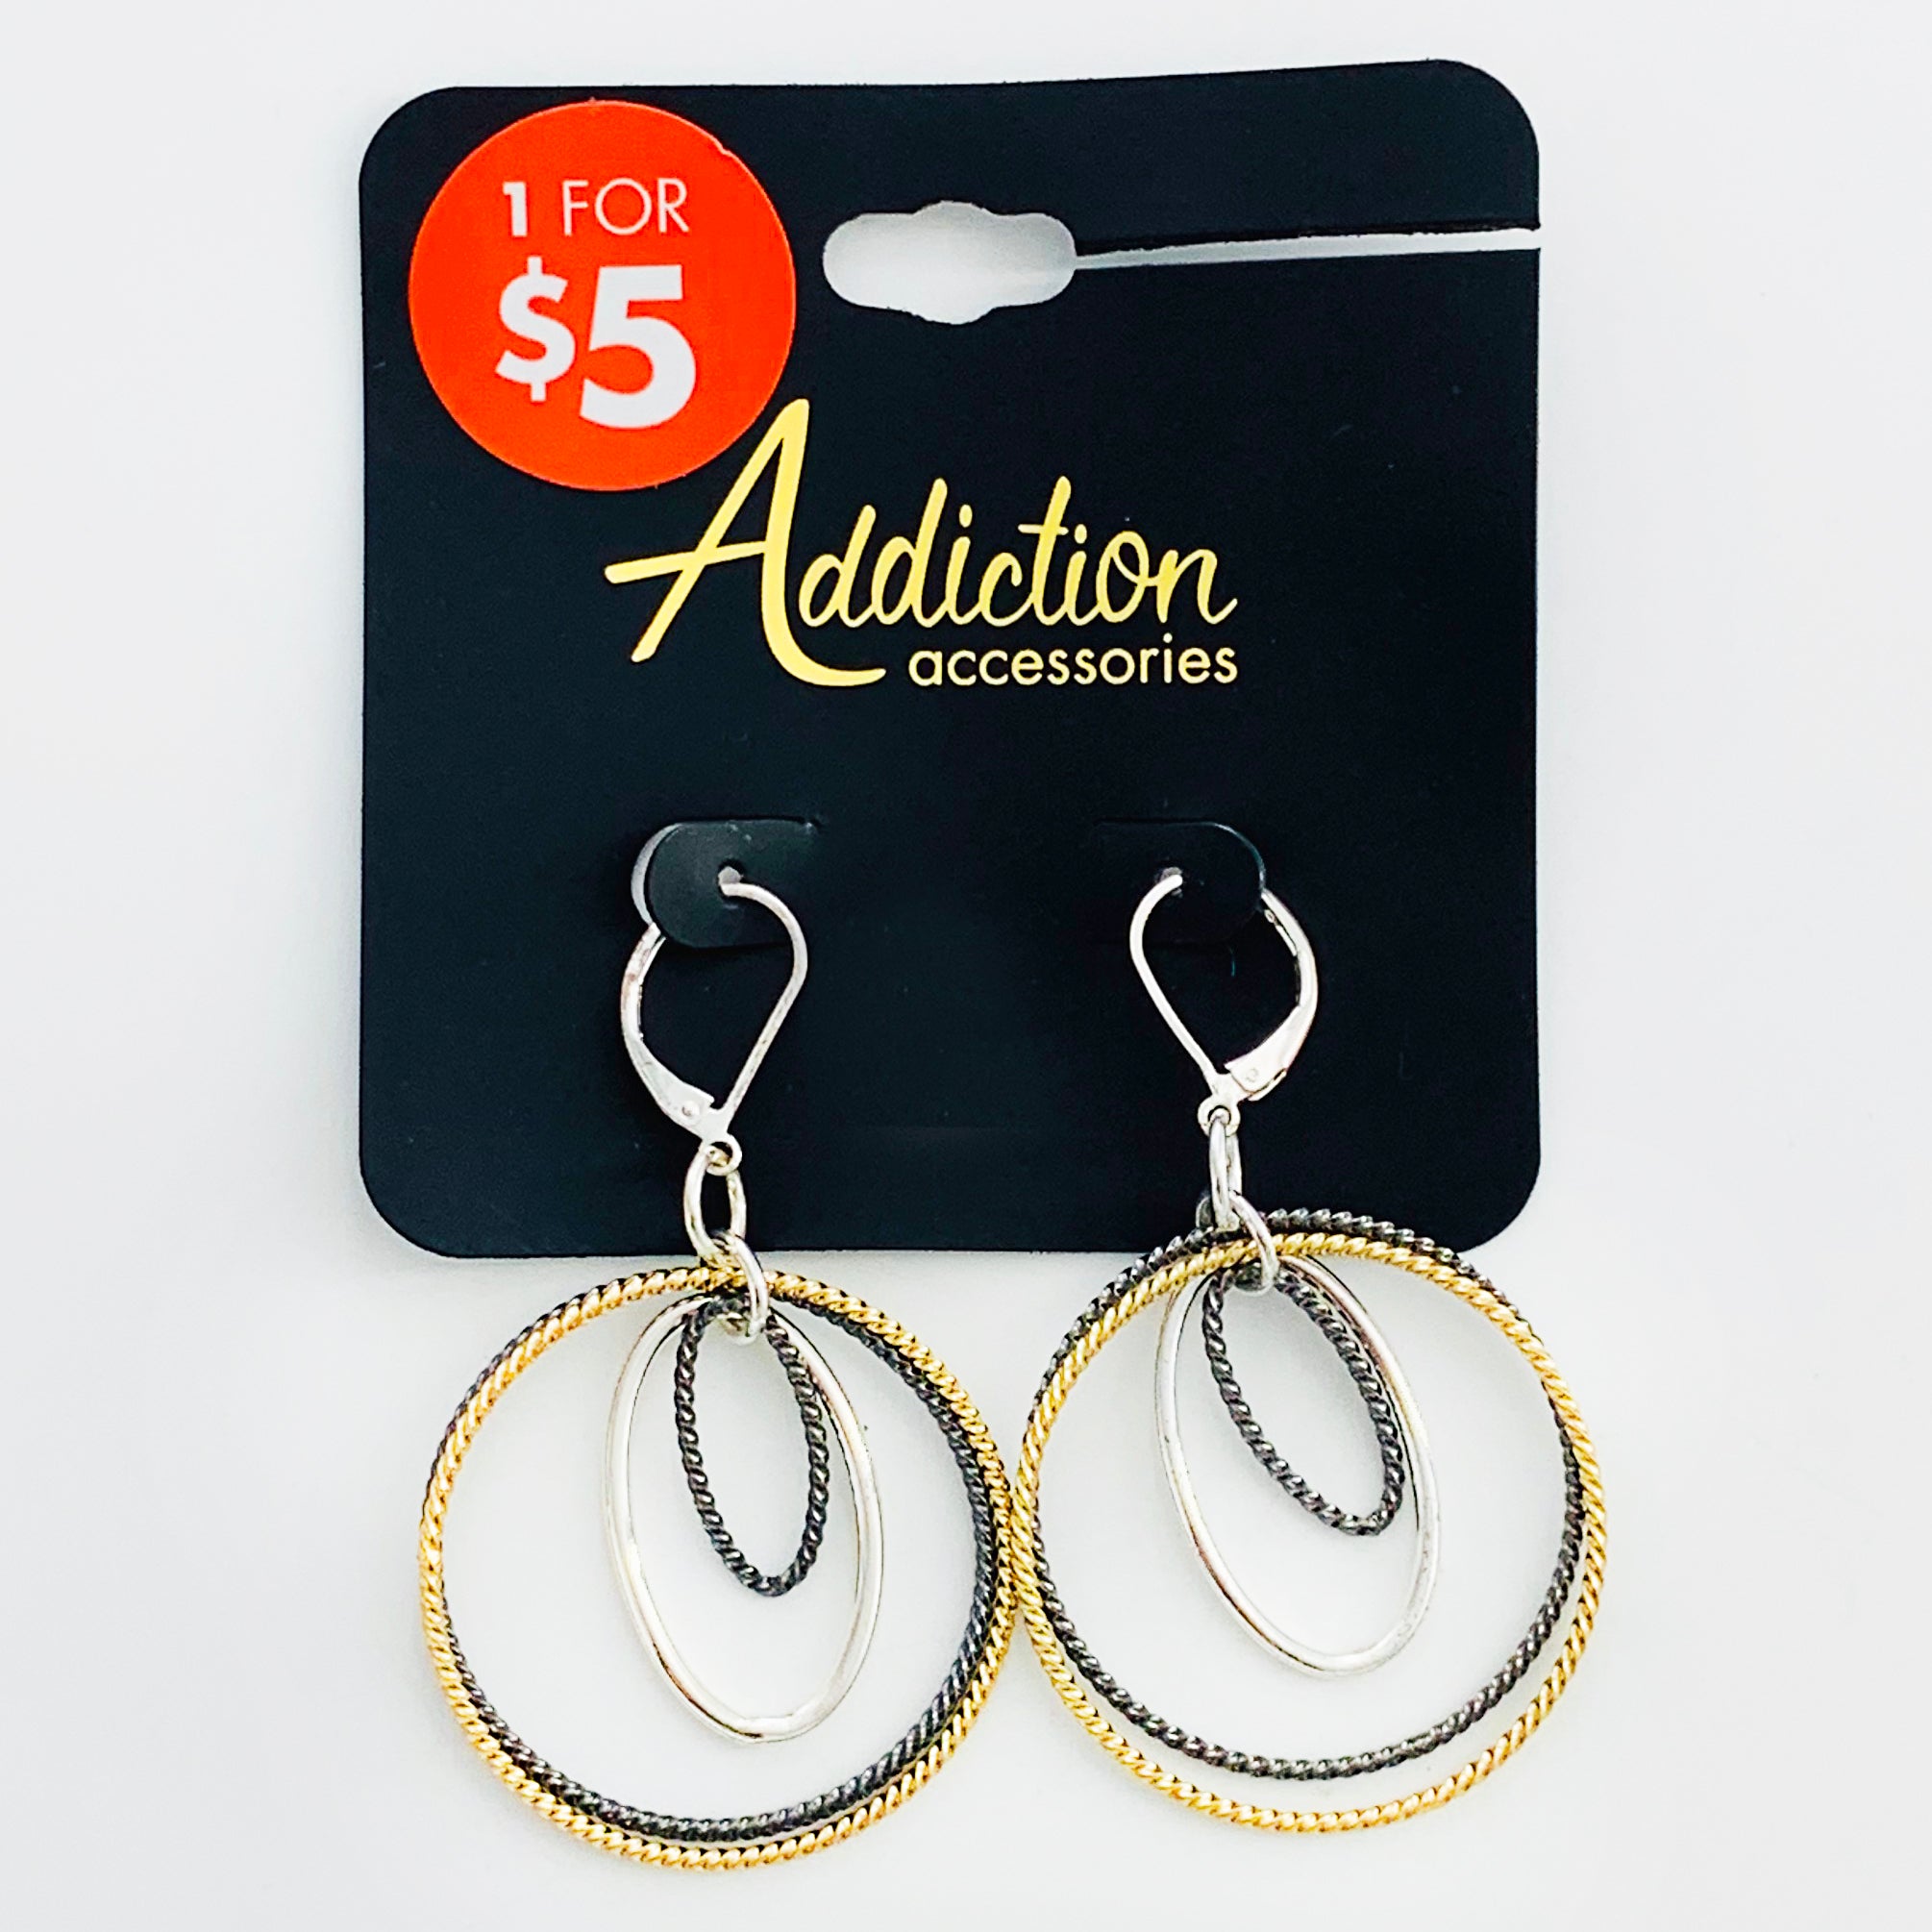 Hoop earrings in silver, gold, and grey